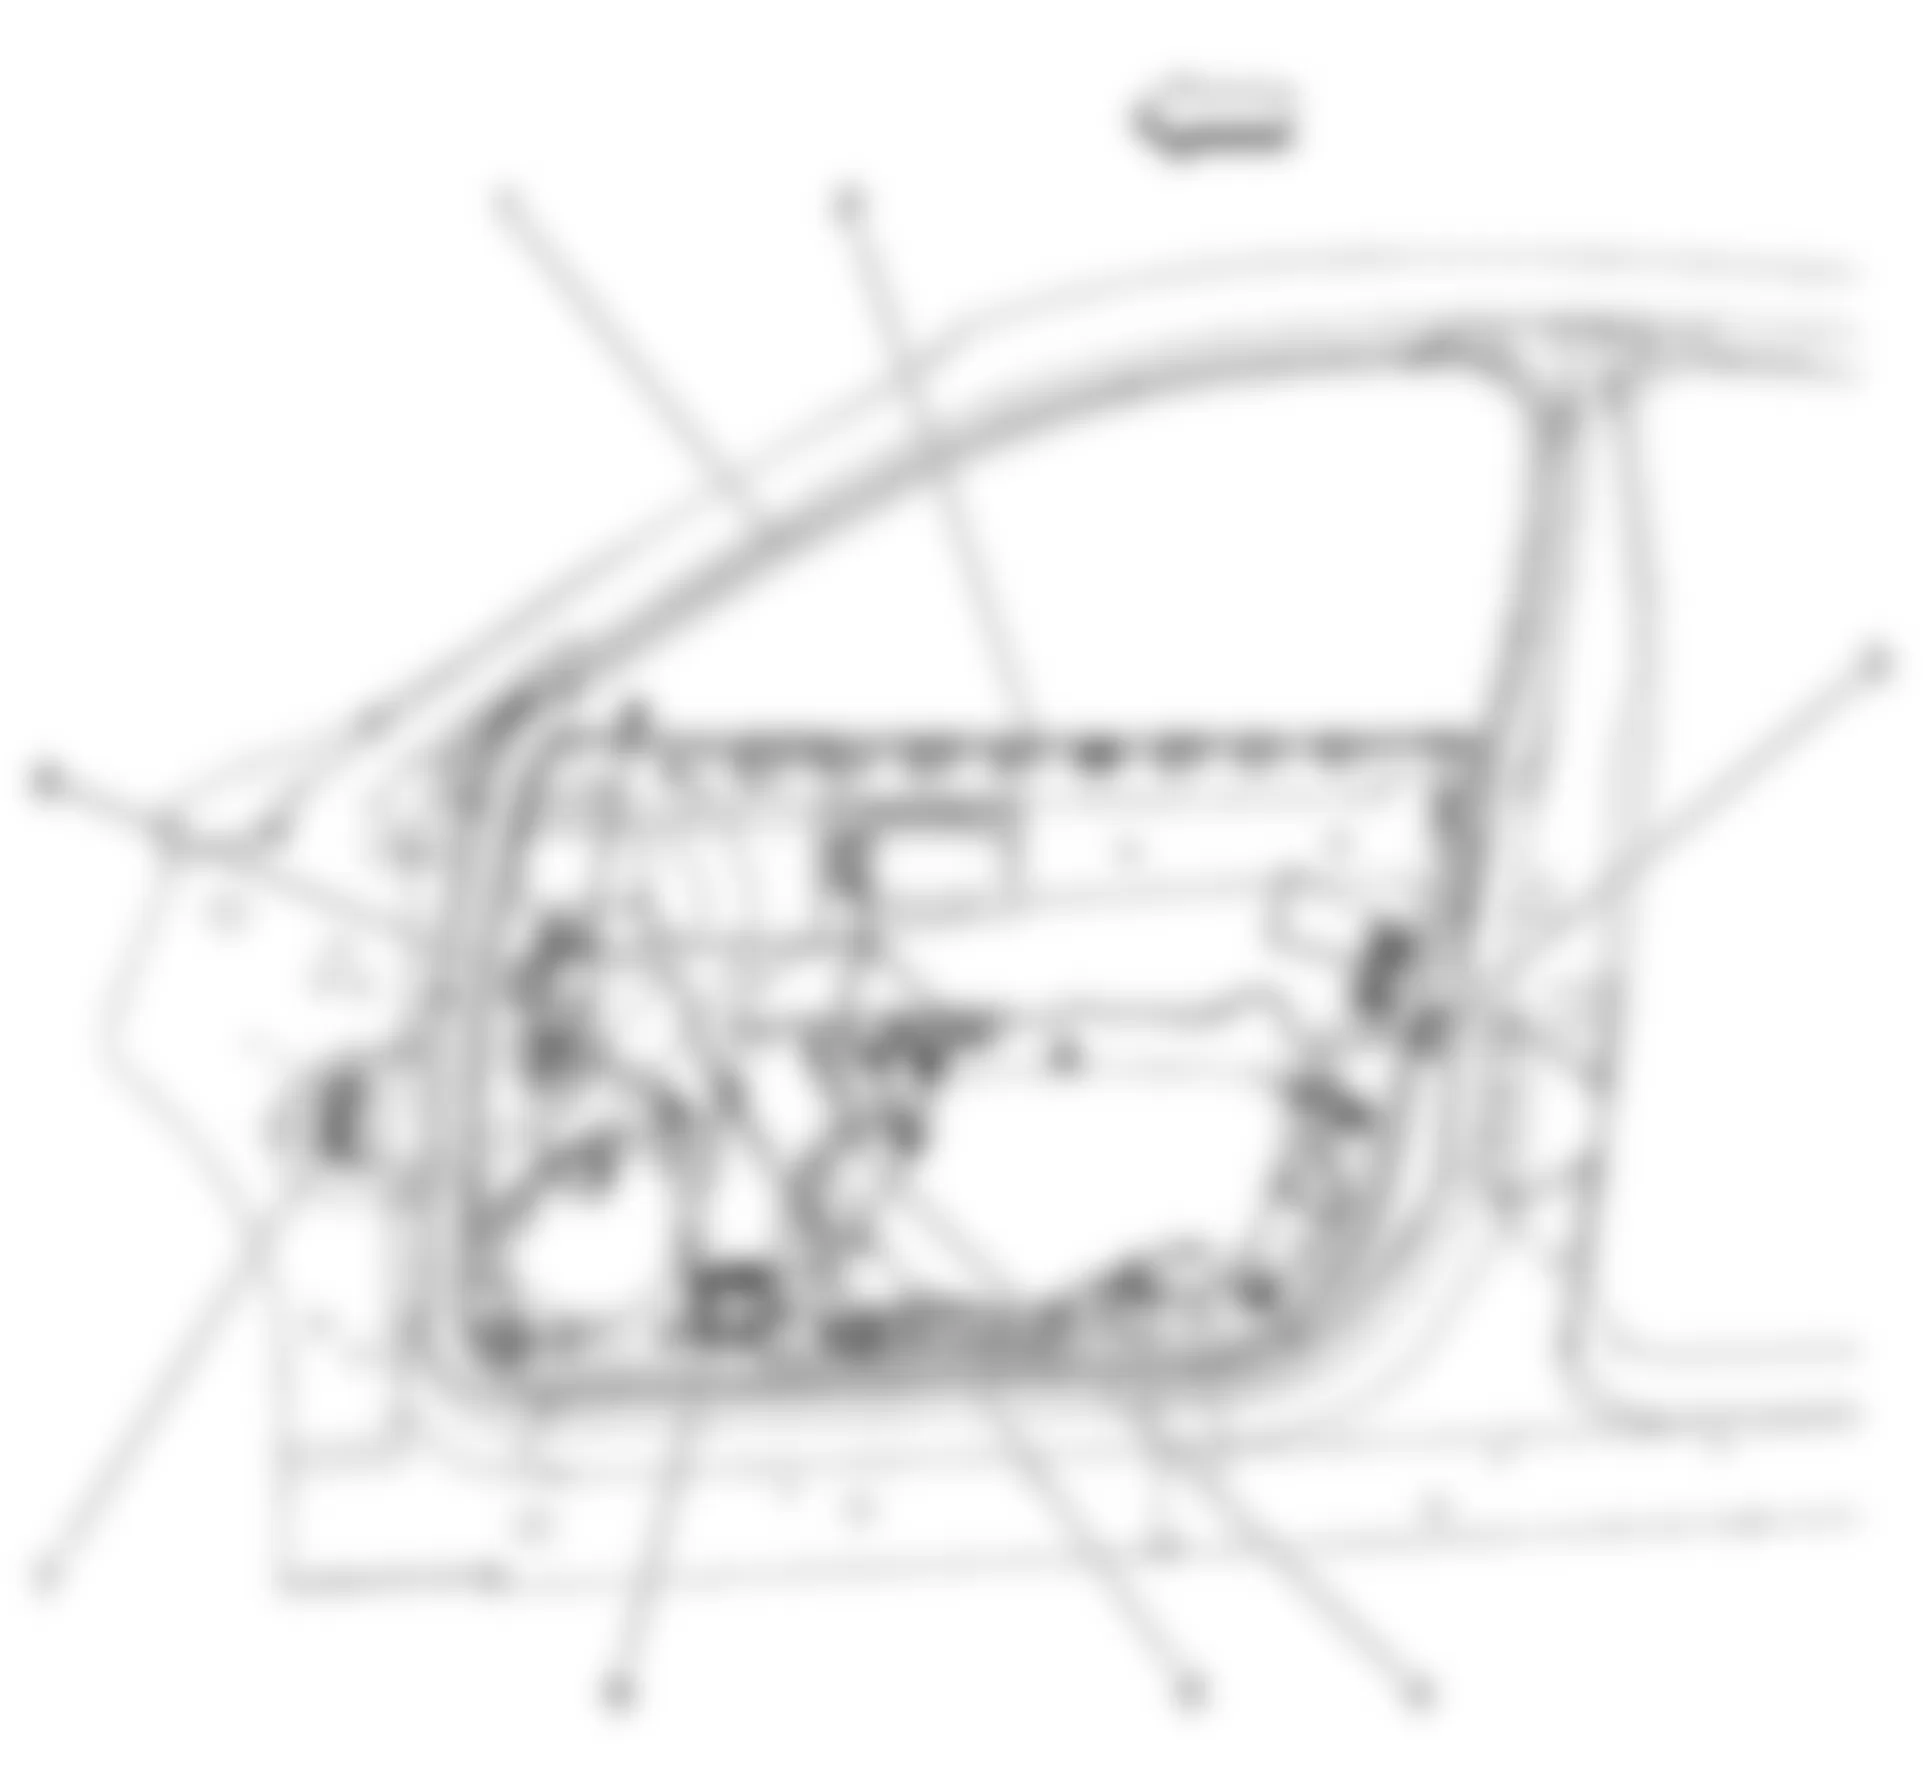 Buick Allure CXL 2008 - Component Locations -  Drivers Door